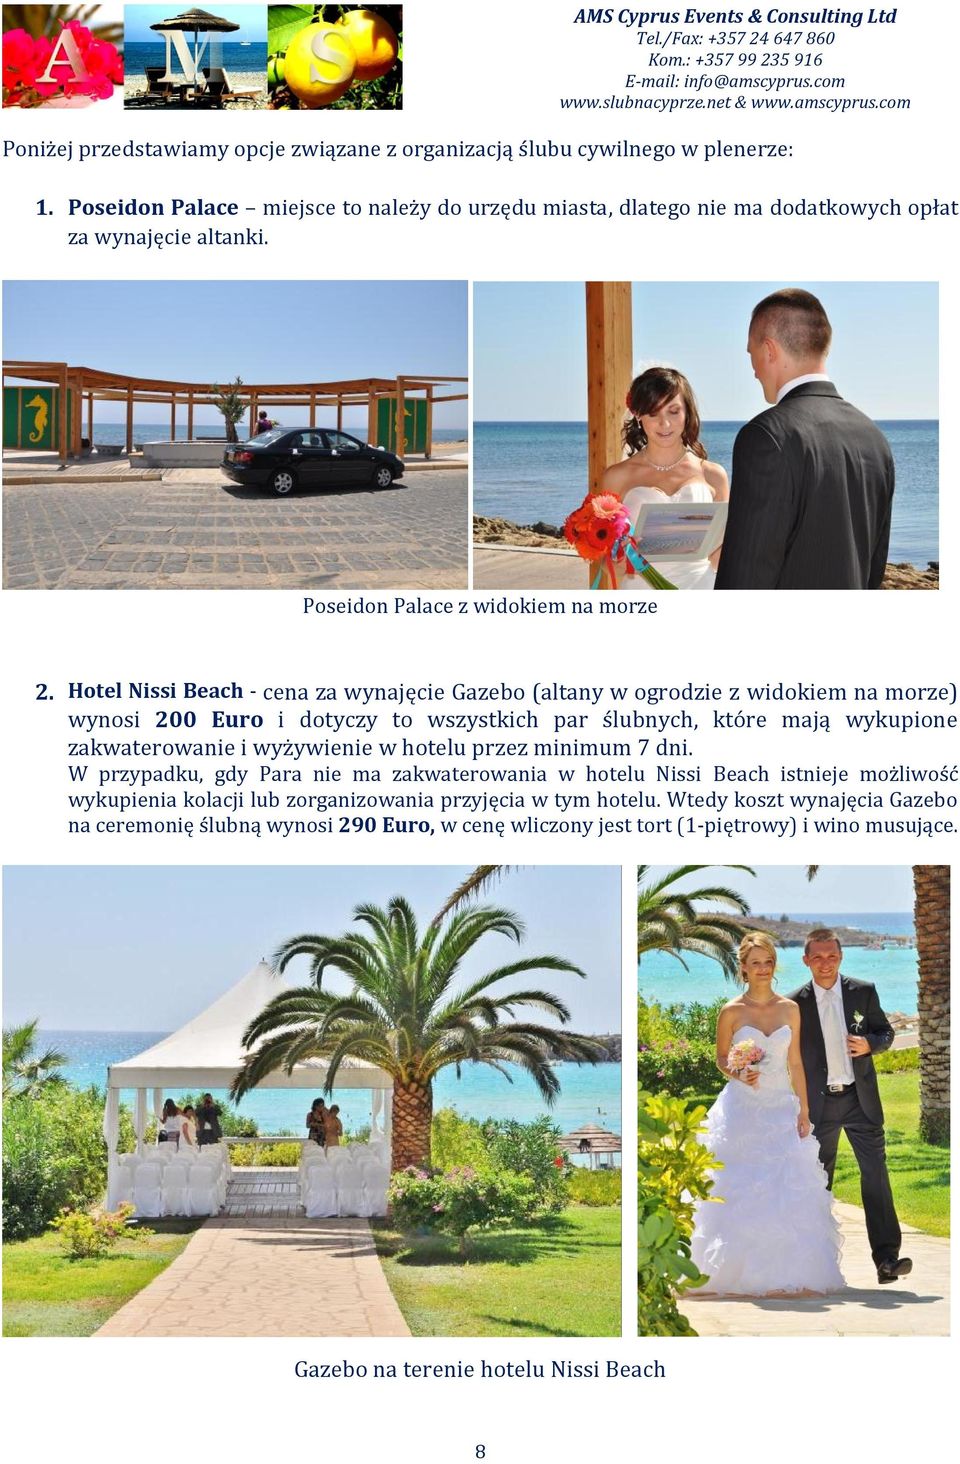 Hotel Nissi Beach - cena za wynajęcie Gazebo (altany w ogrodzie z widokiem na morze) wynosi 200 Euro i dotyczy to wszystkich par ślubnych, które mają wykupione zakwaterowanie i wyżywienie